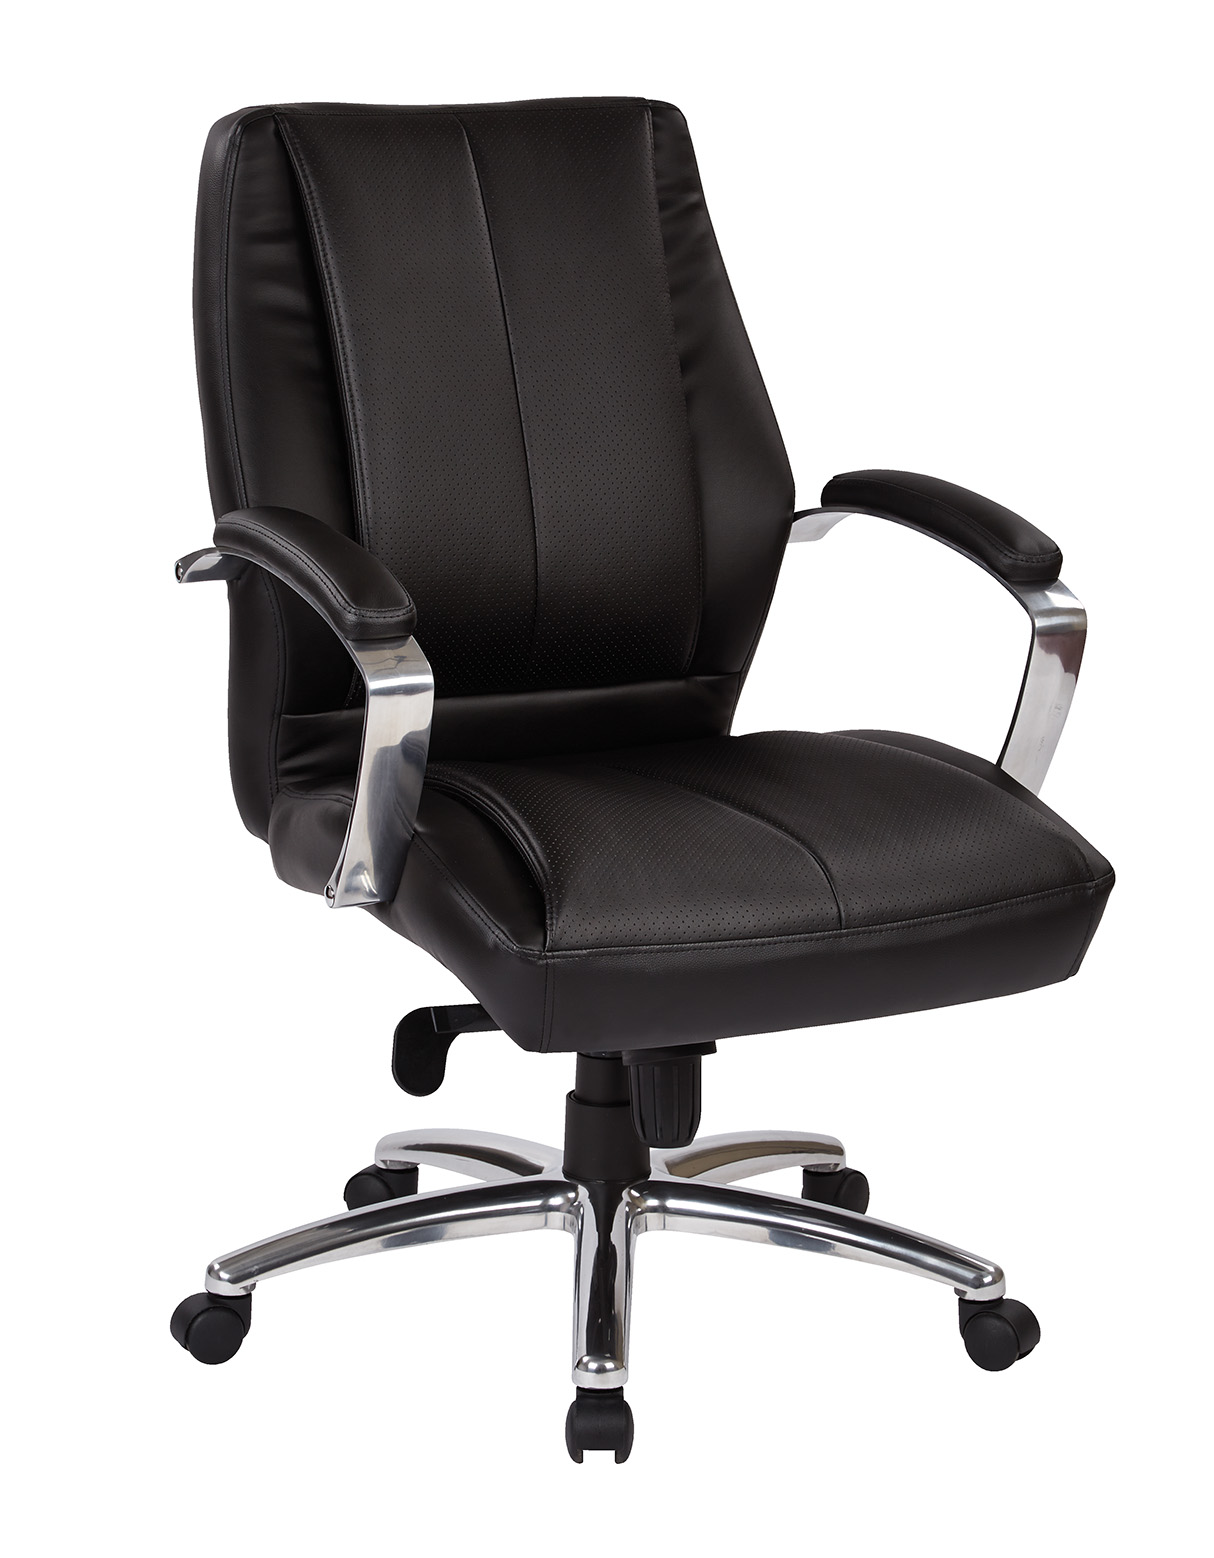 Proline II Office Chair